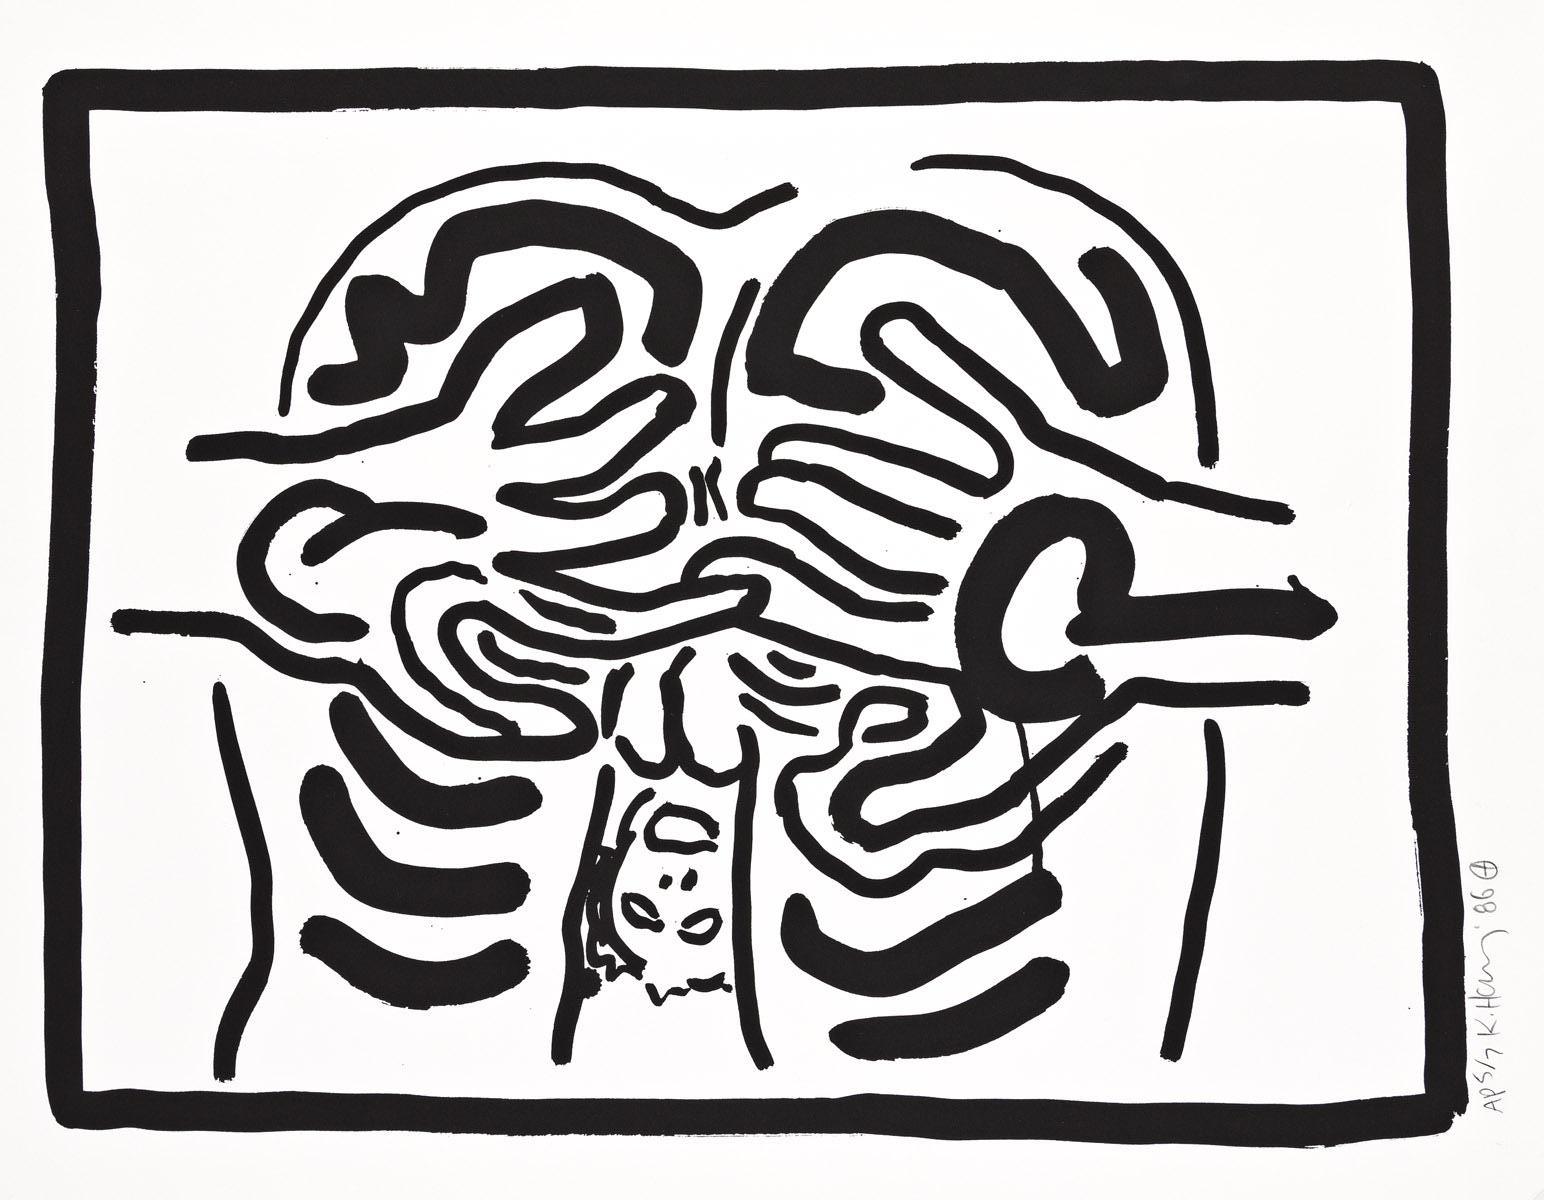 Keith Haring Abstract Print - Bad Boys